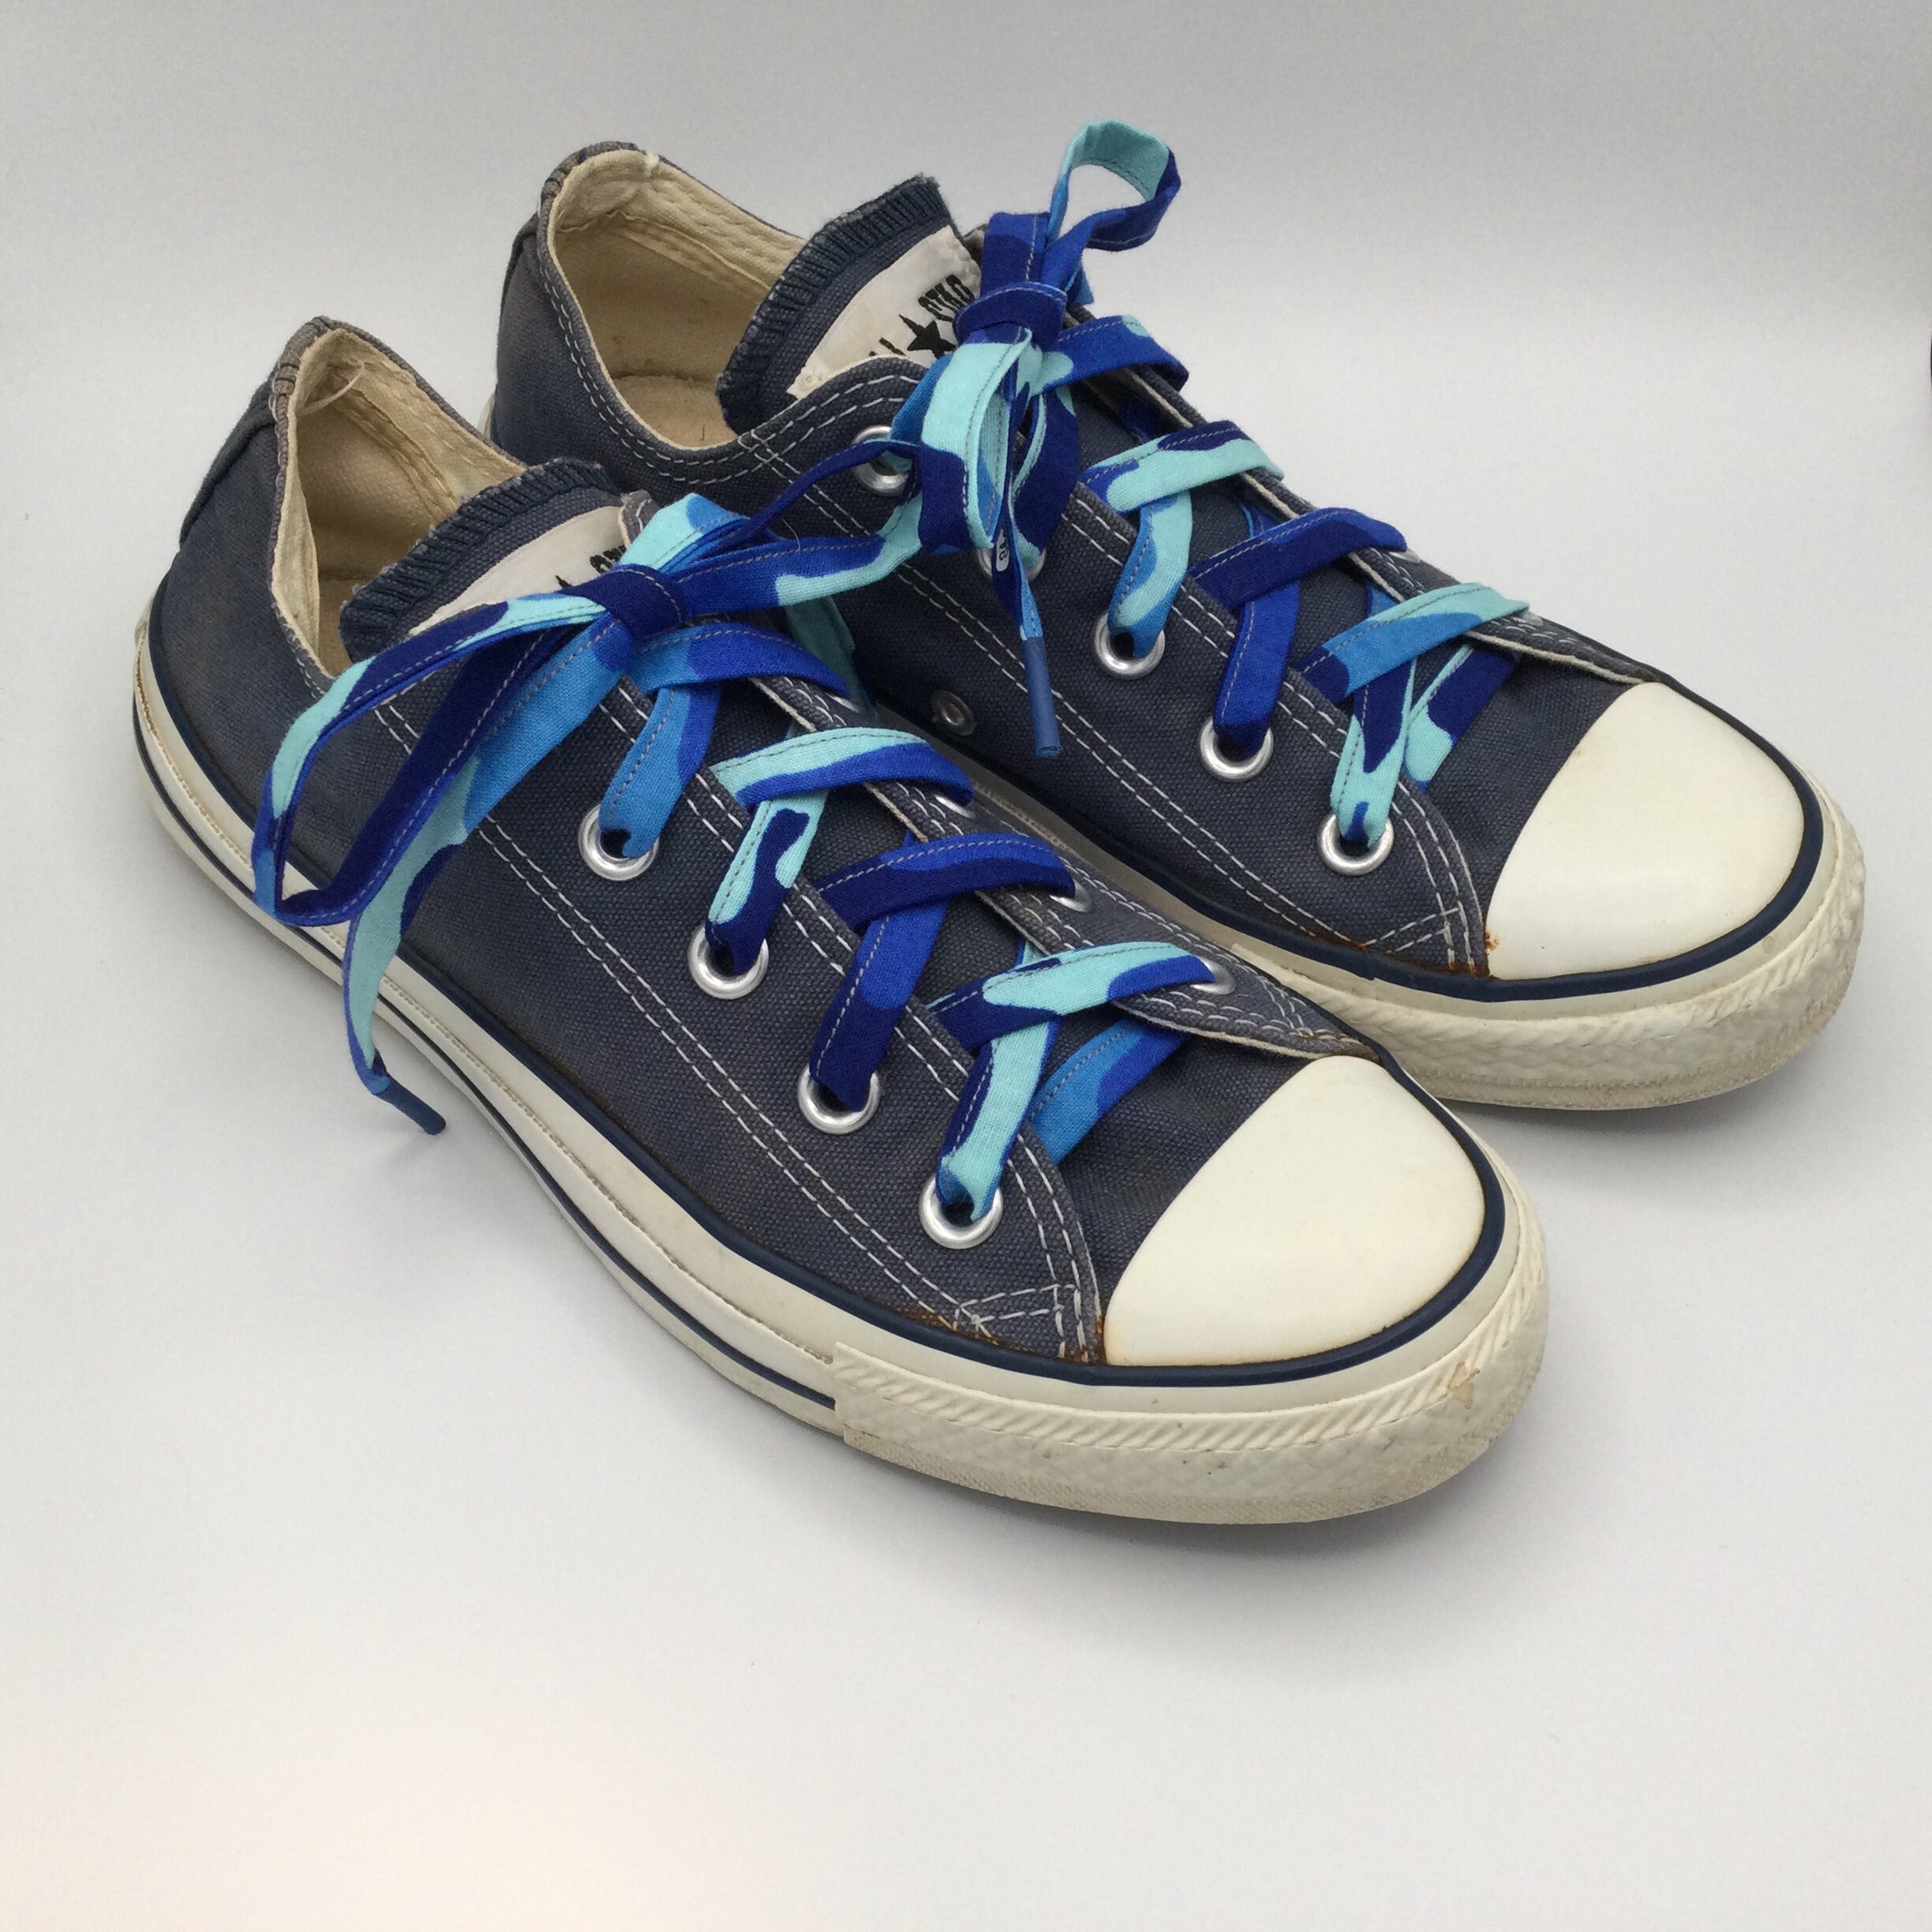 Converse Shoelaces - Etsy Canada